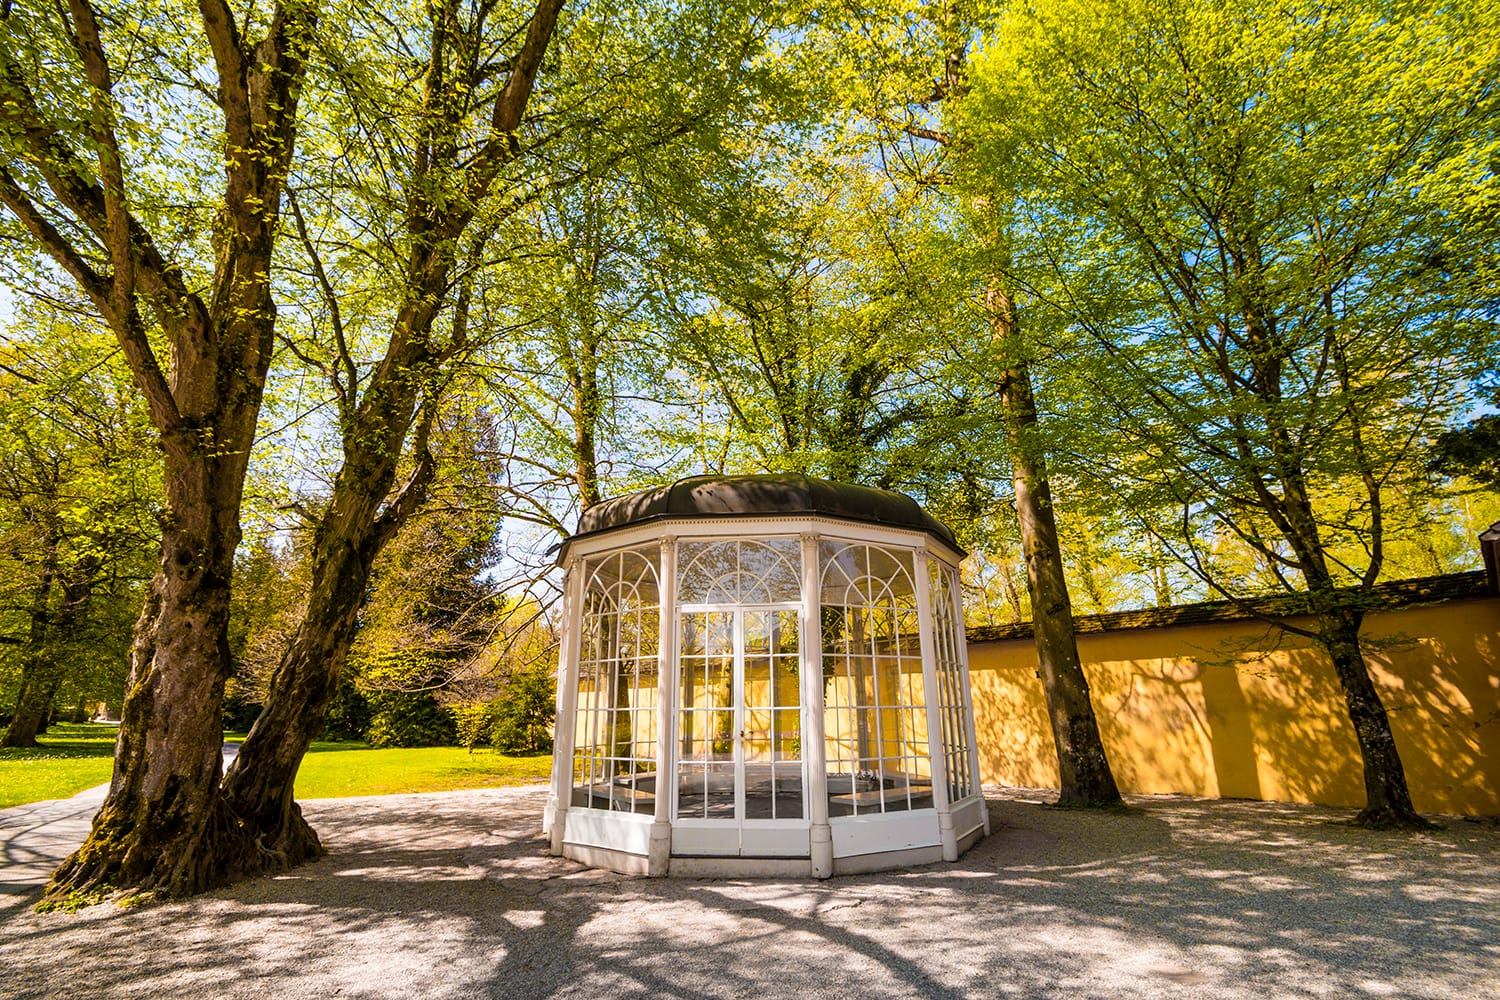 The "Sound of music" pavillion in Hellbrunn park in Salzburg, Austria